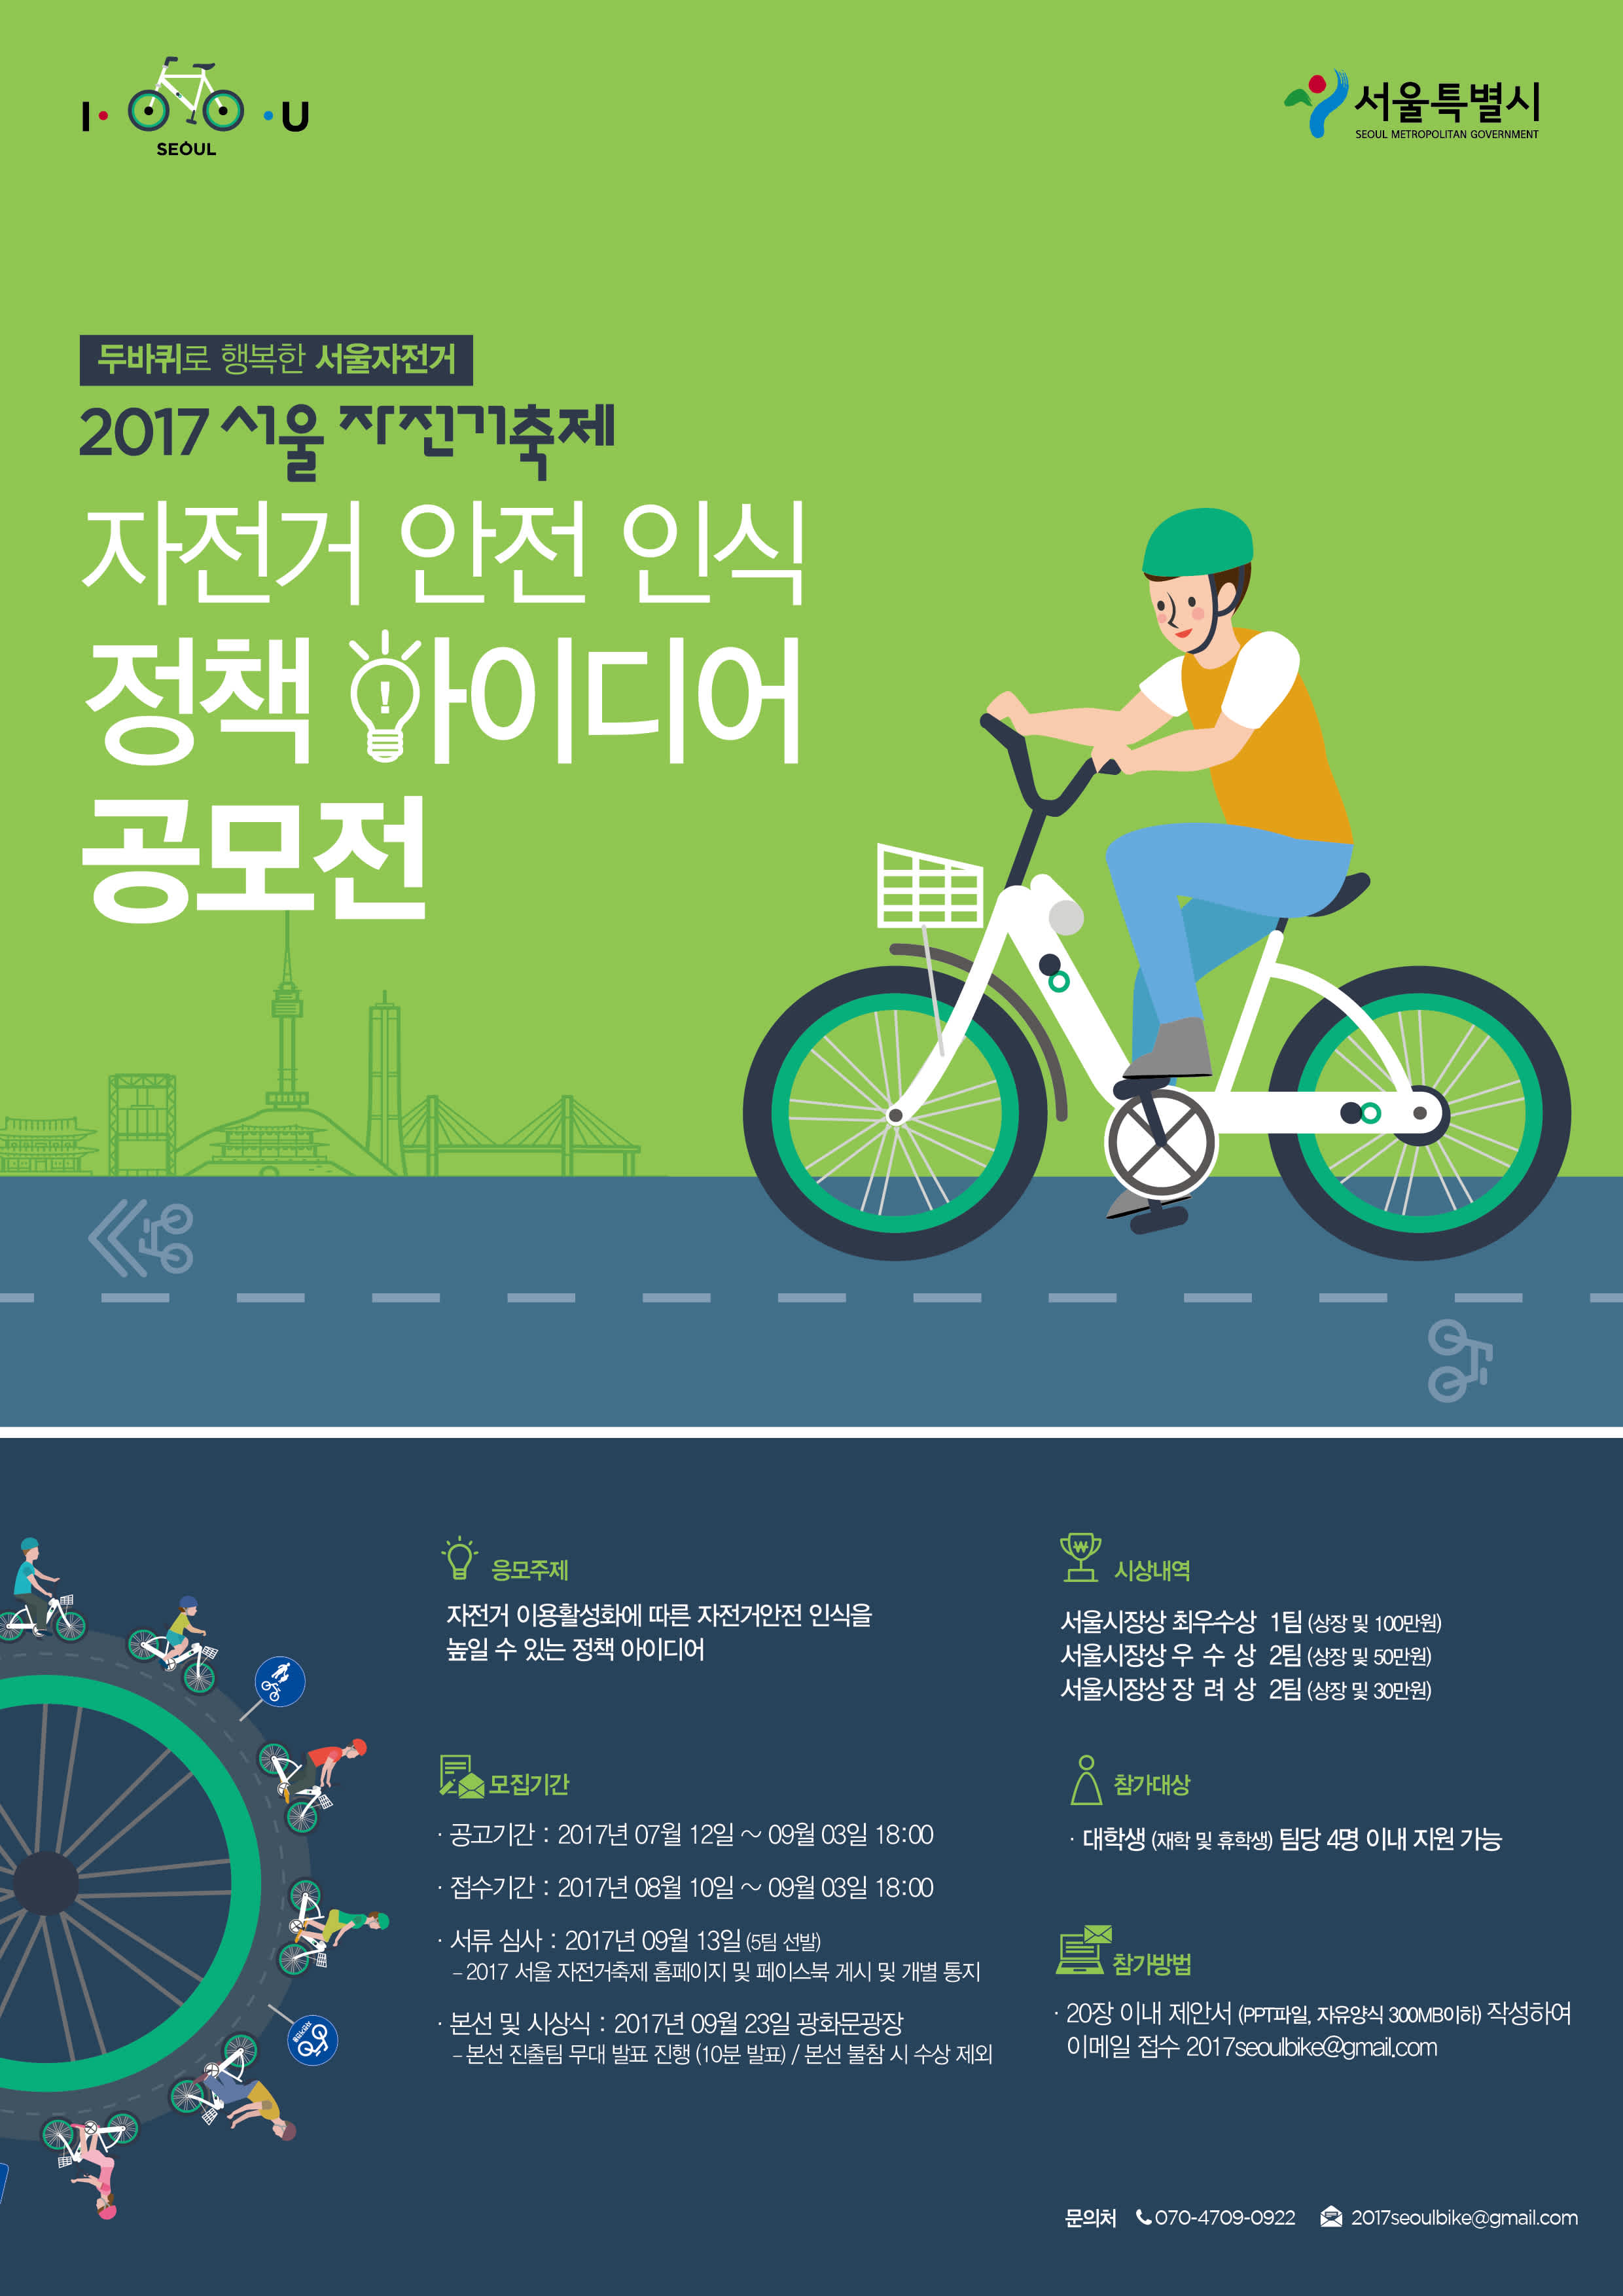 서울특별시 자전거 축제 - 자전거 안전인식 정책아이디어 공모전 모집